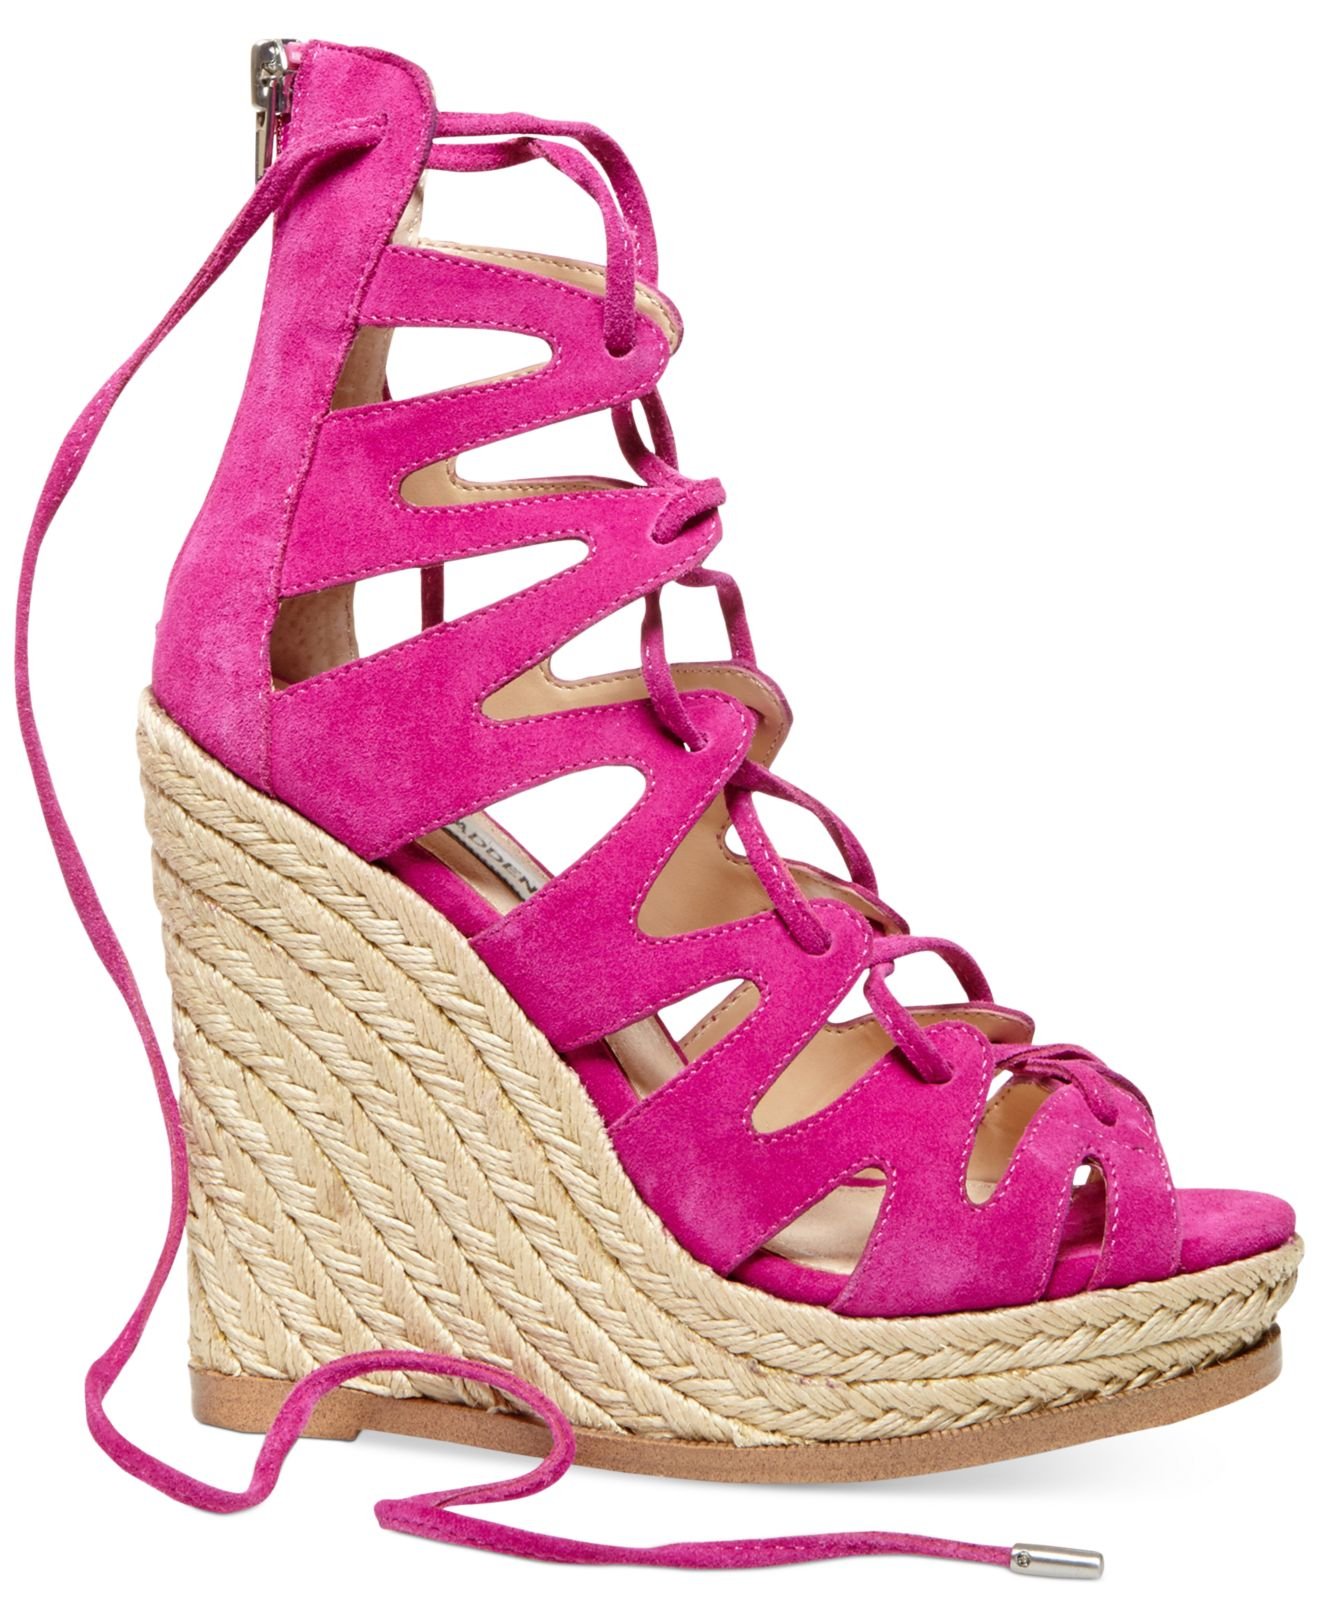 Lyst - Steve Madden Women'S Theea Ghillie Platform Wedge Sandals in Pink